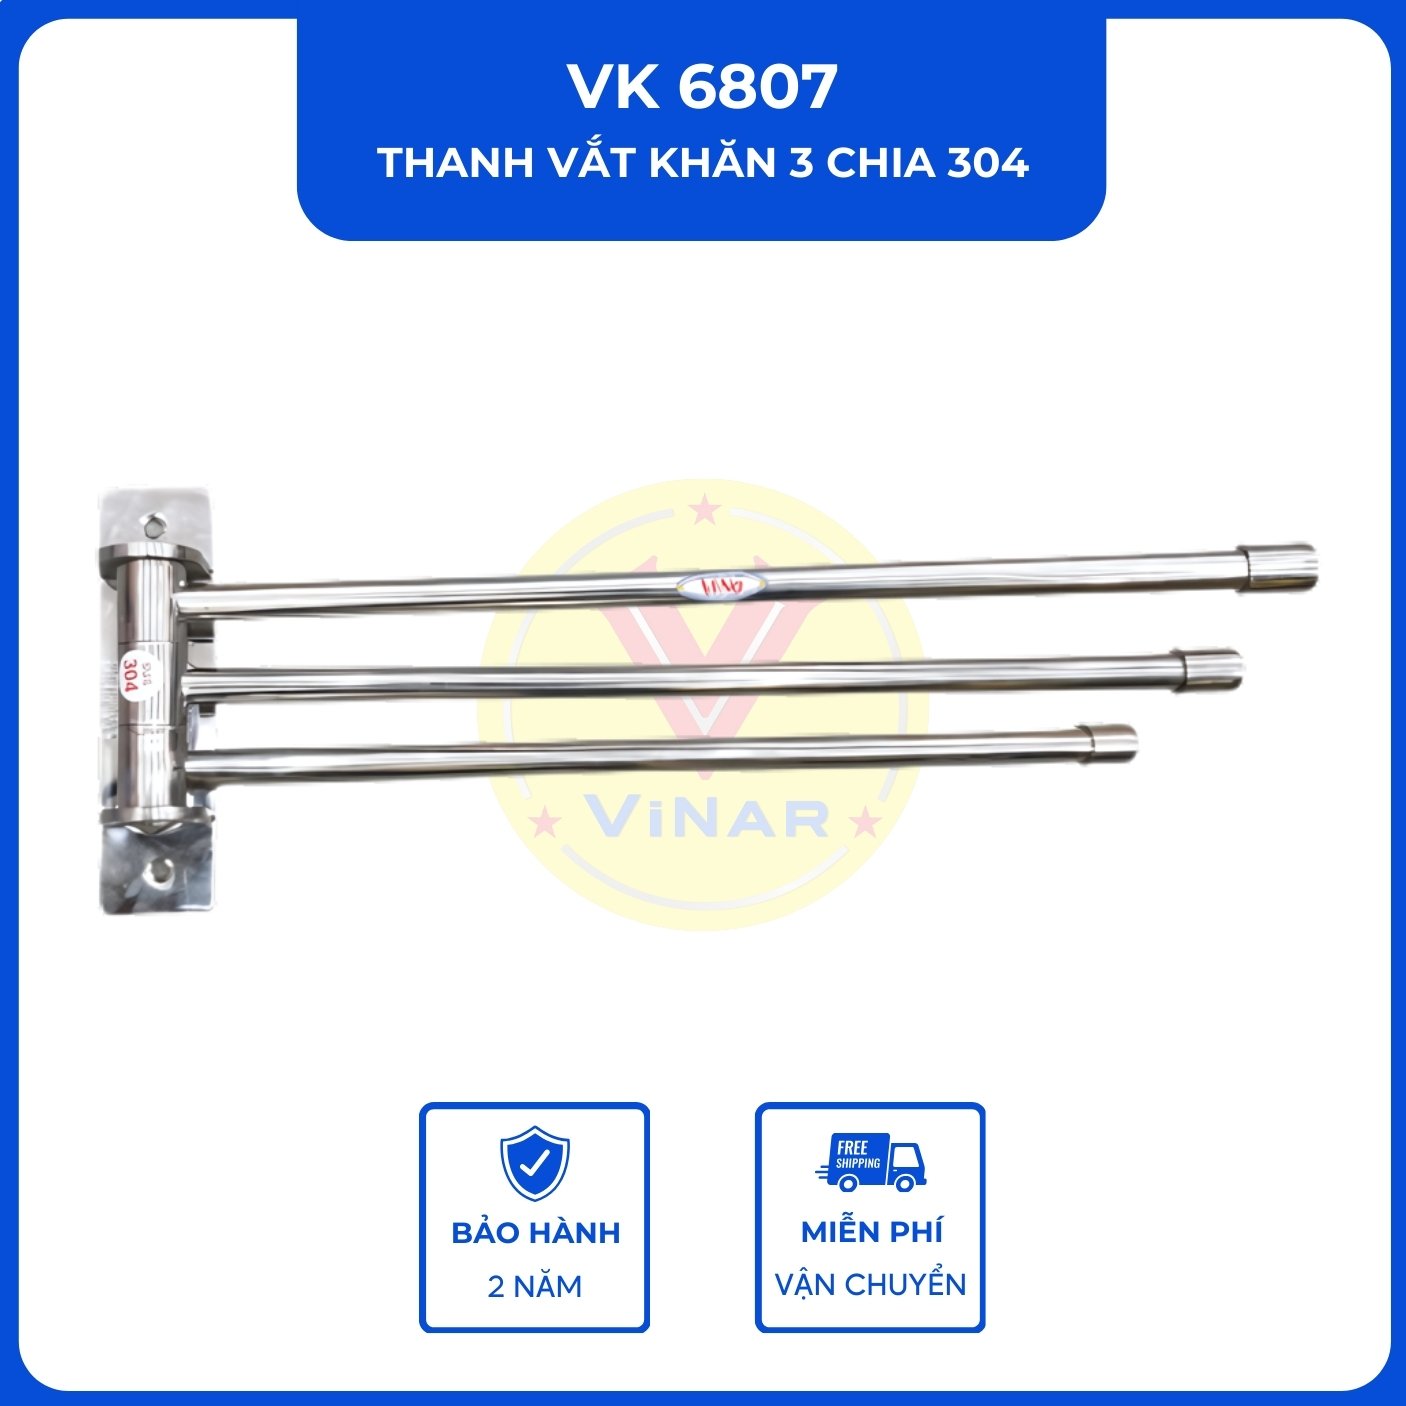 thanh-vat-khan-3-chia-304-VK6807